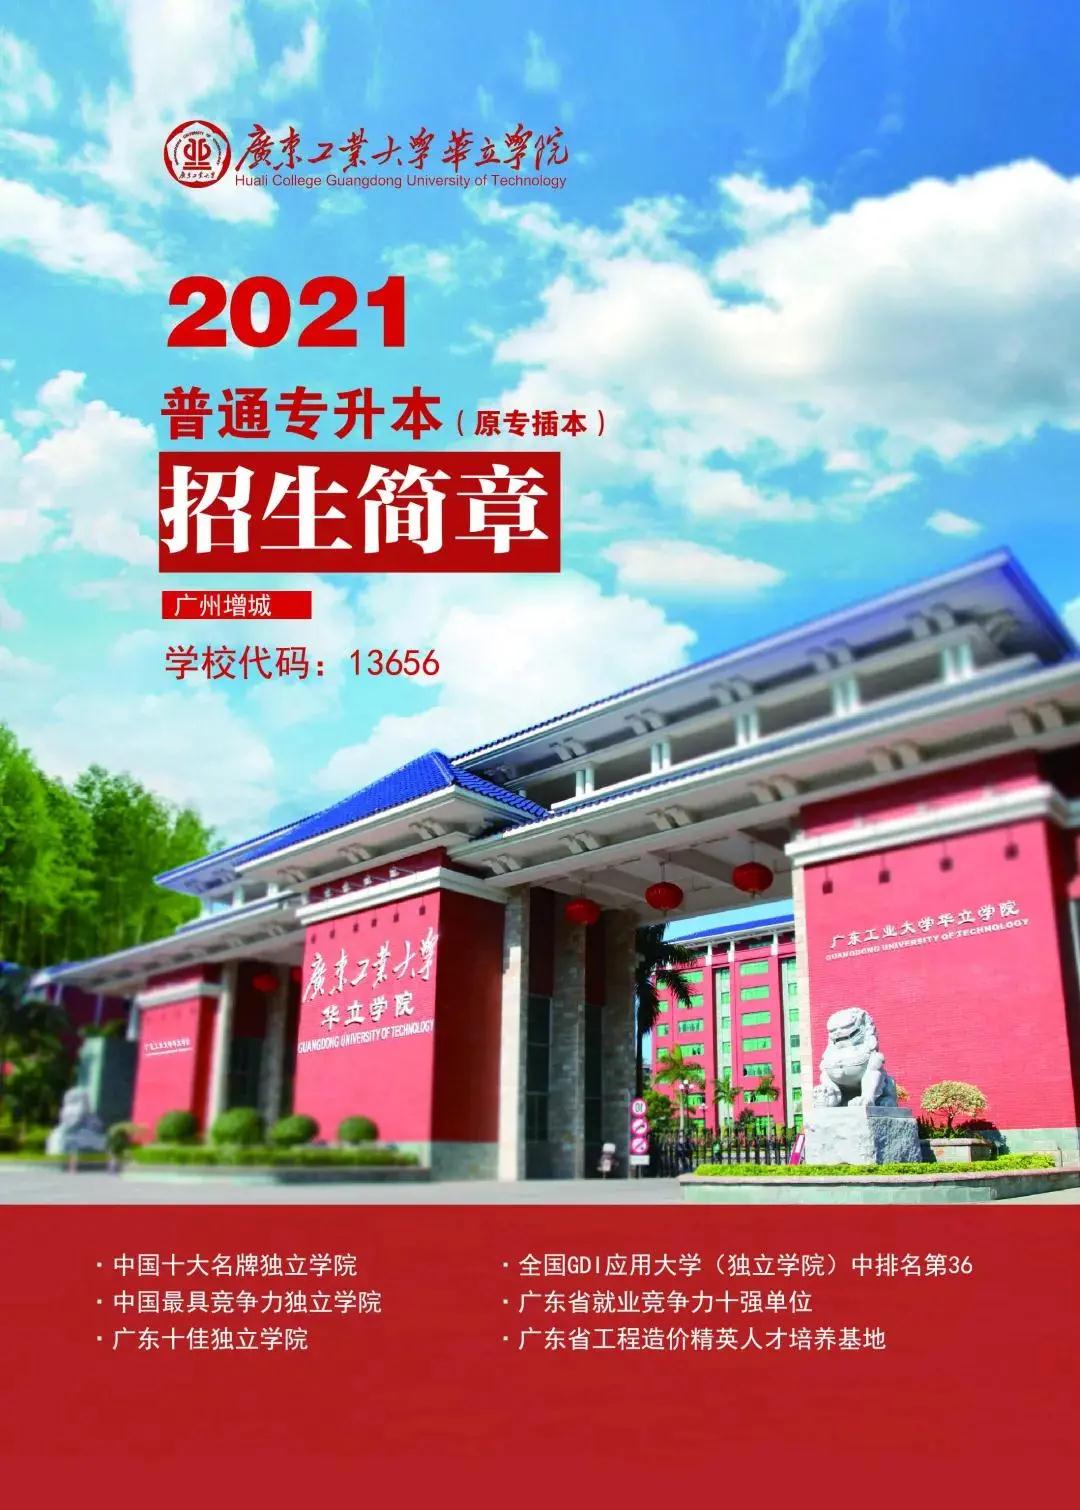 广东工业大学华立学院 2021年普通专升本招生简章(图1)